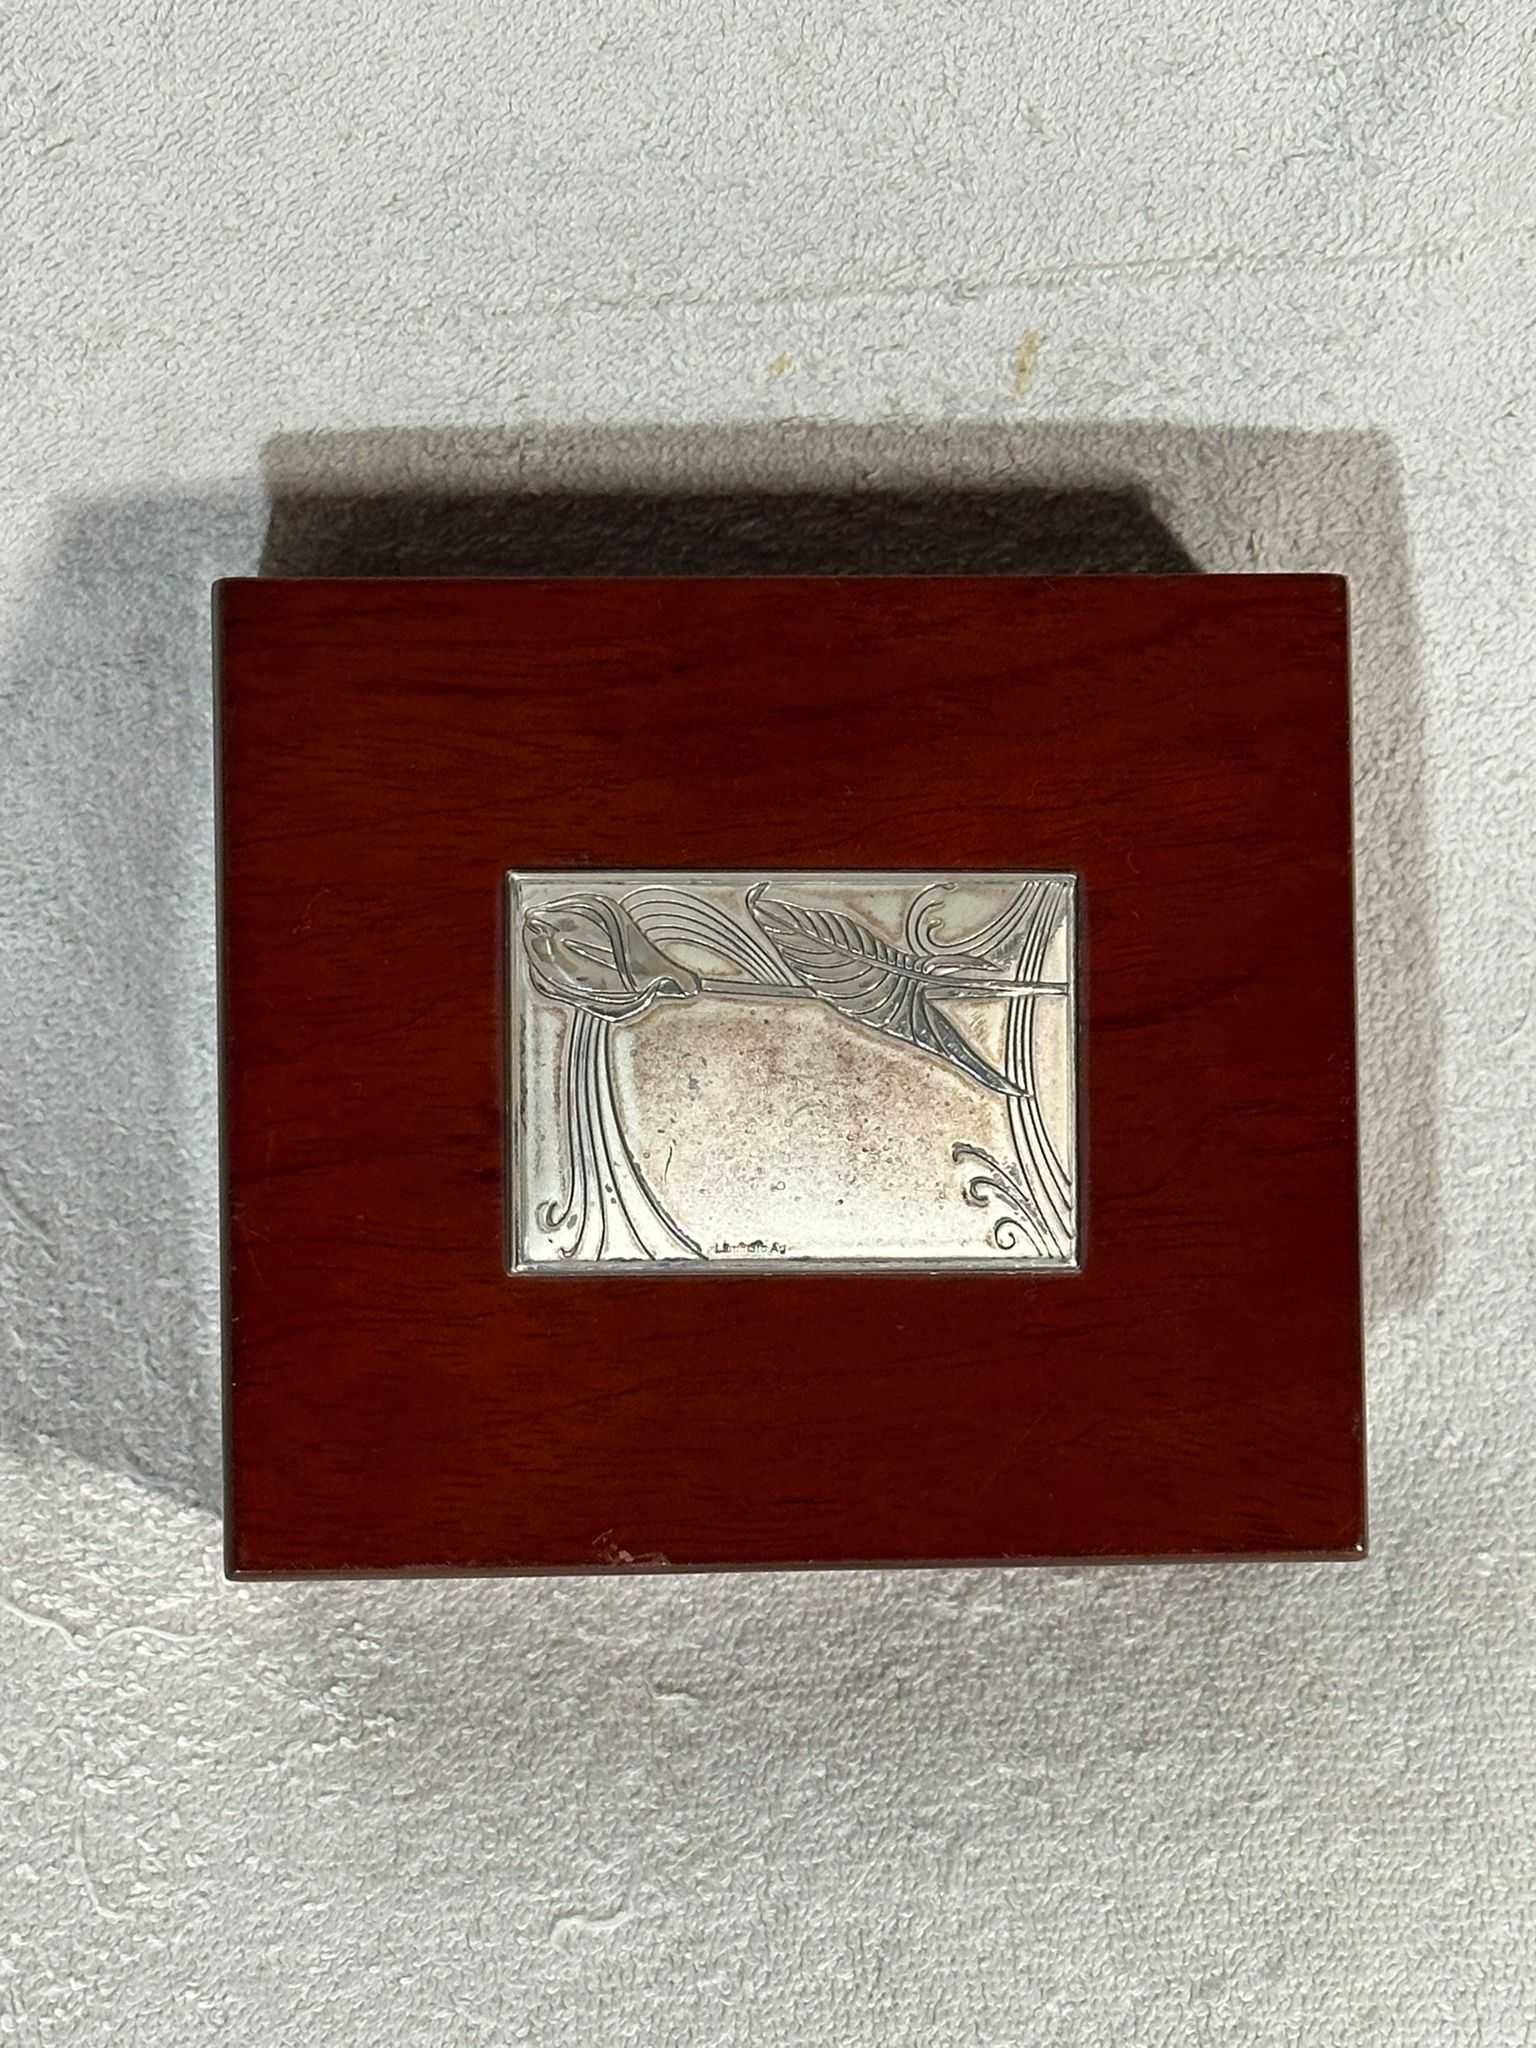 CUTIE BIJUTERII - Lemn + Argint - 13.5 x 11.5 x 5.5 cm - Made in Italy